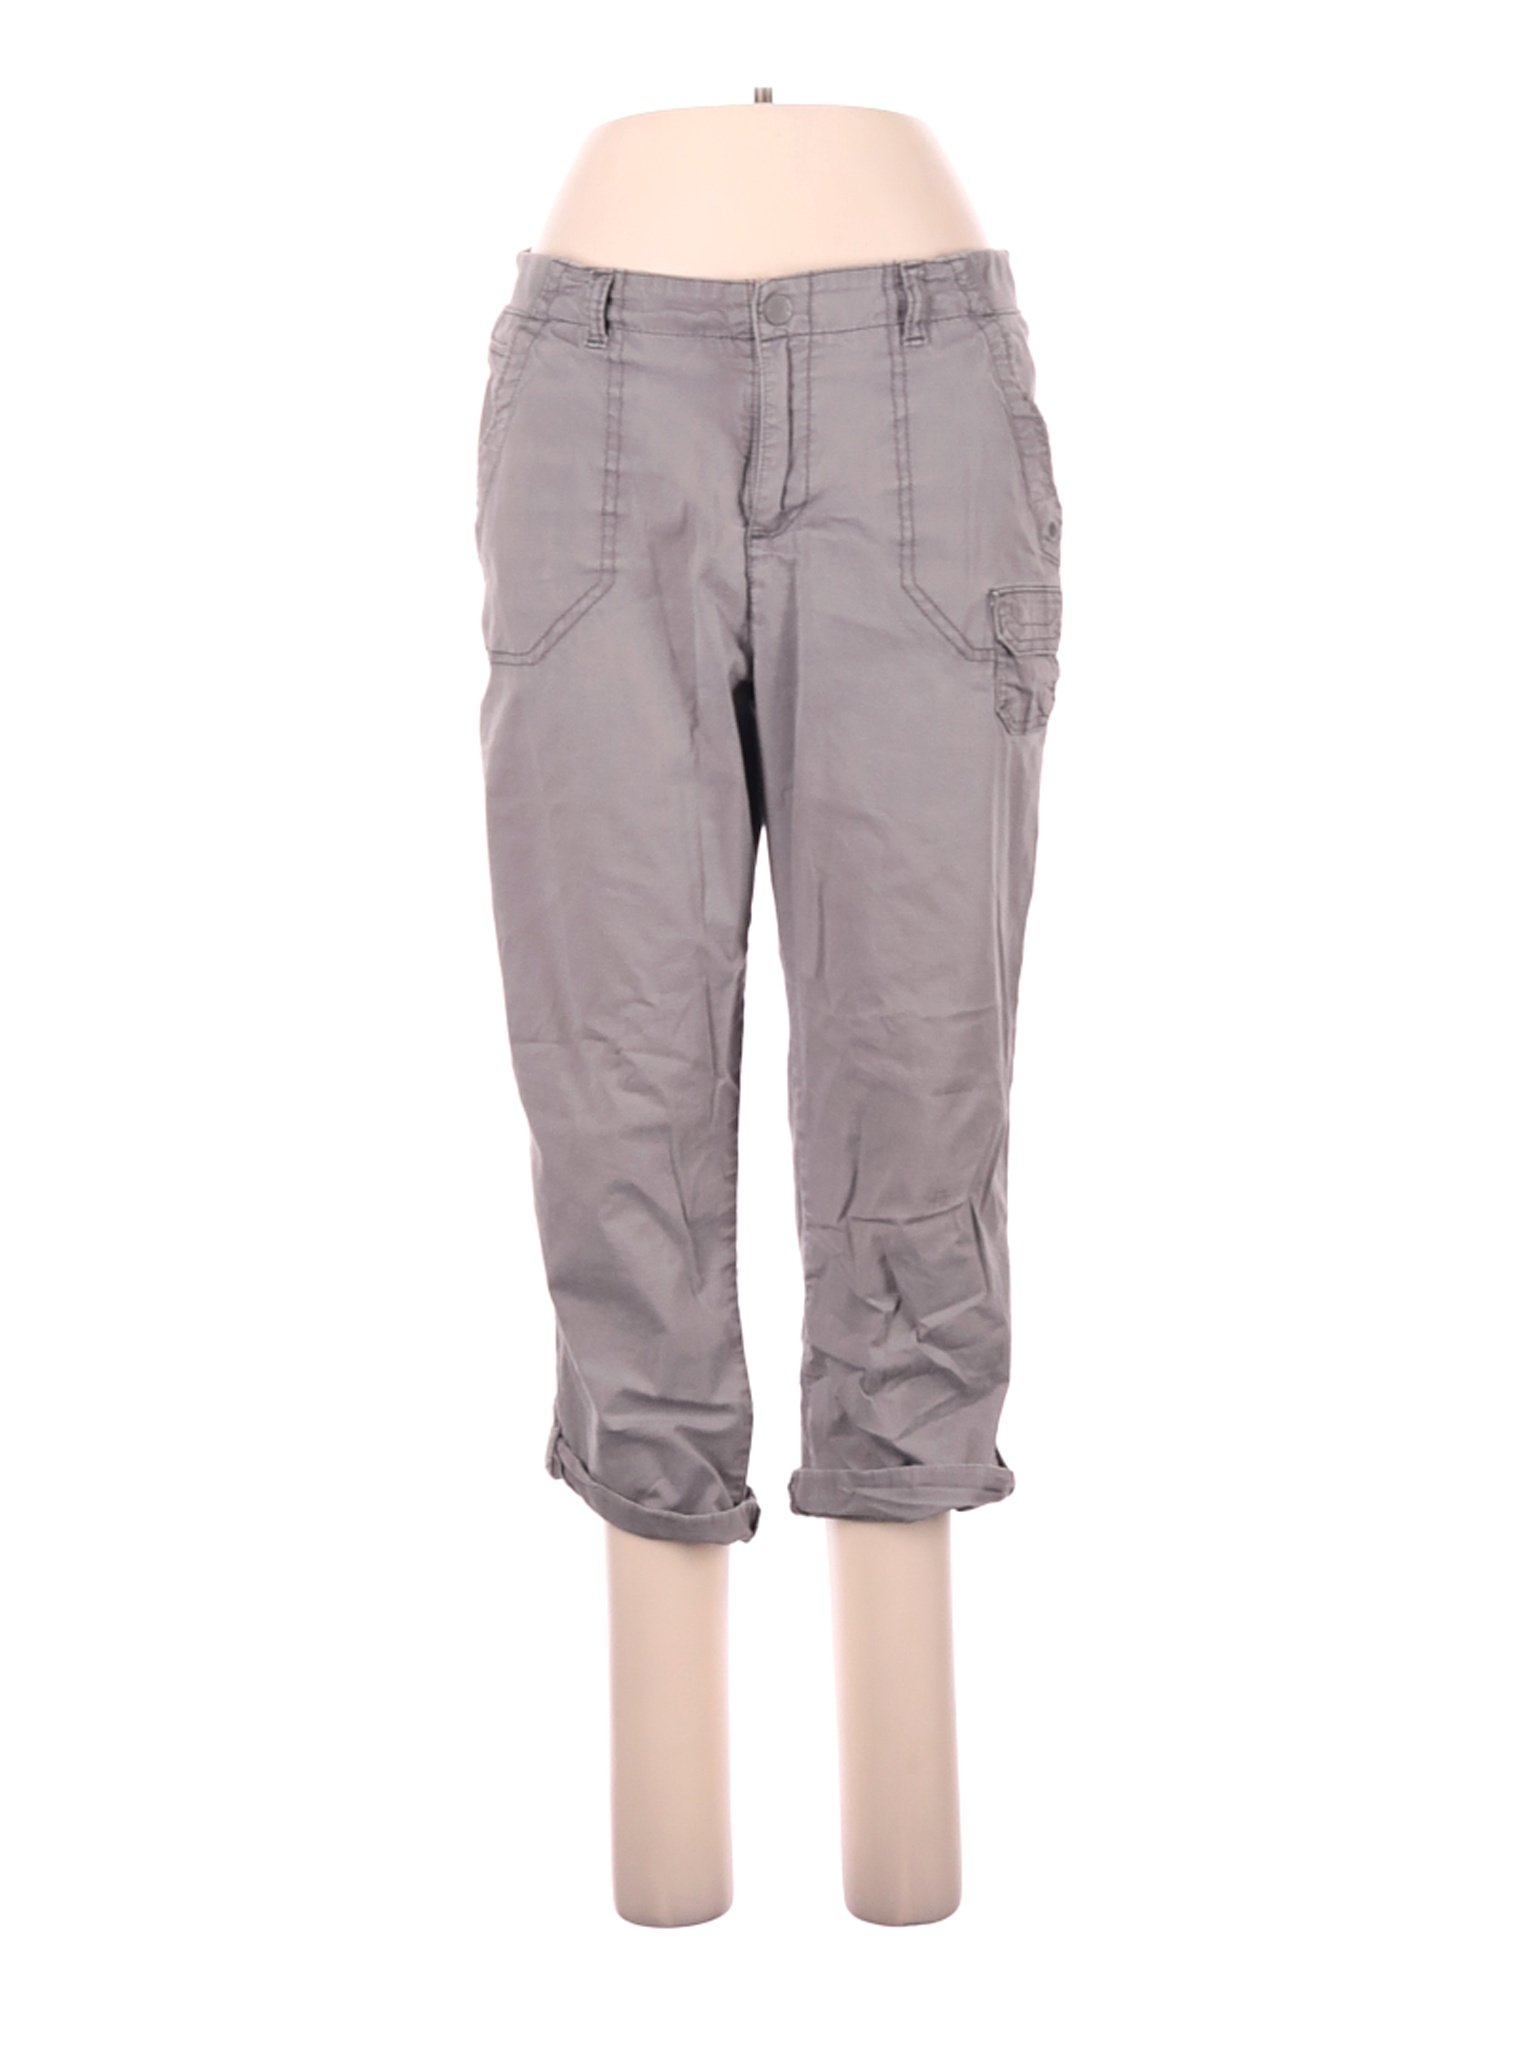 Lee Women Gray Cargo Pants 12 | eBay